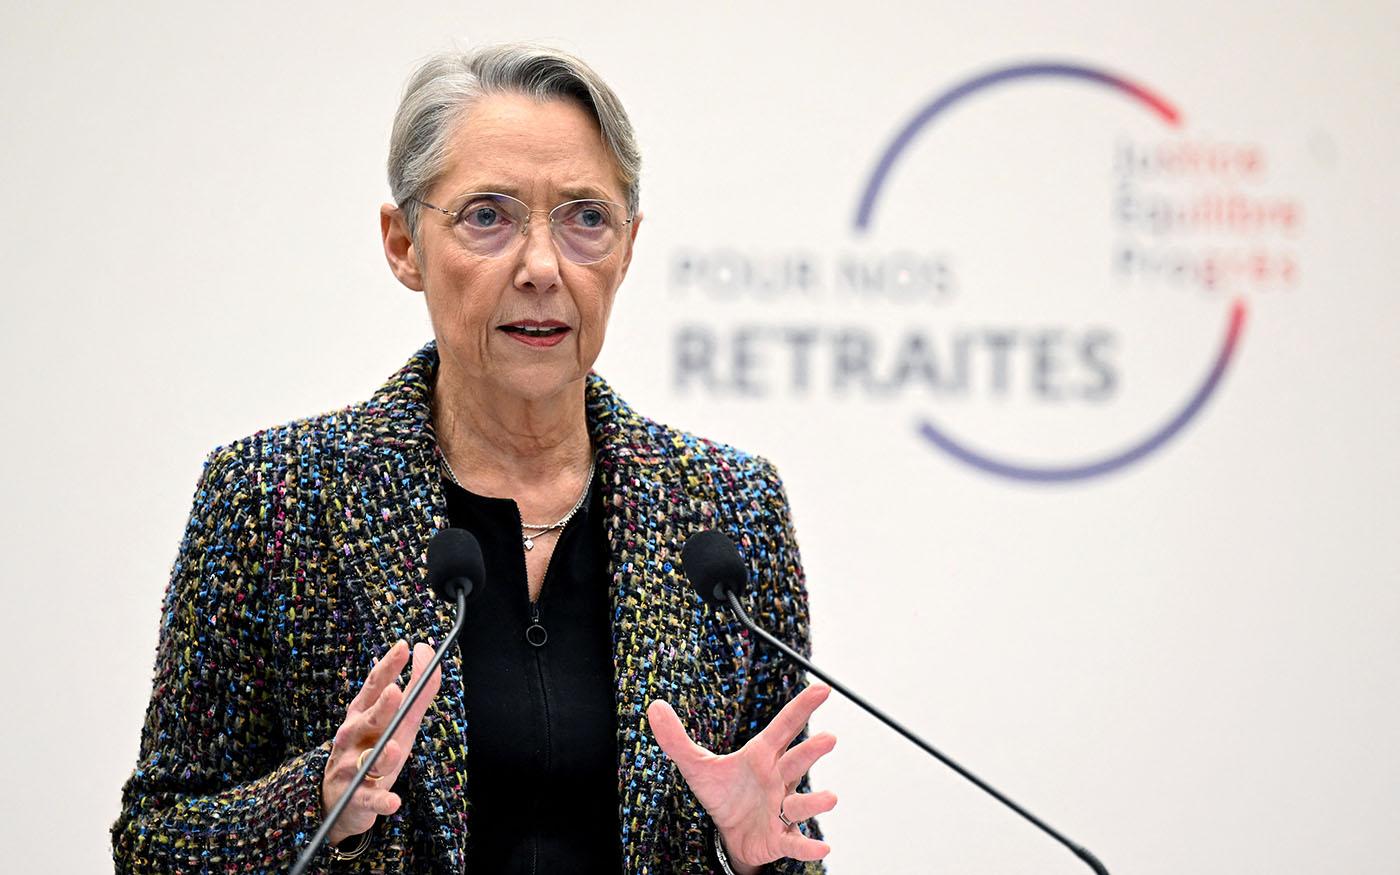 Présentation de la réforme des retraites par Élisabeth Borne, Première ministre du gouvernement français, lors de la conférence de presse du mardi 10 janvier 2023.